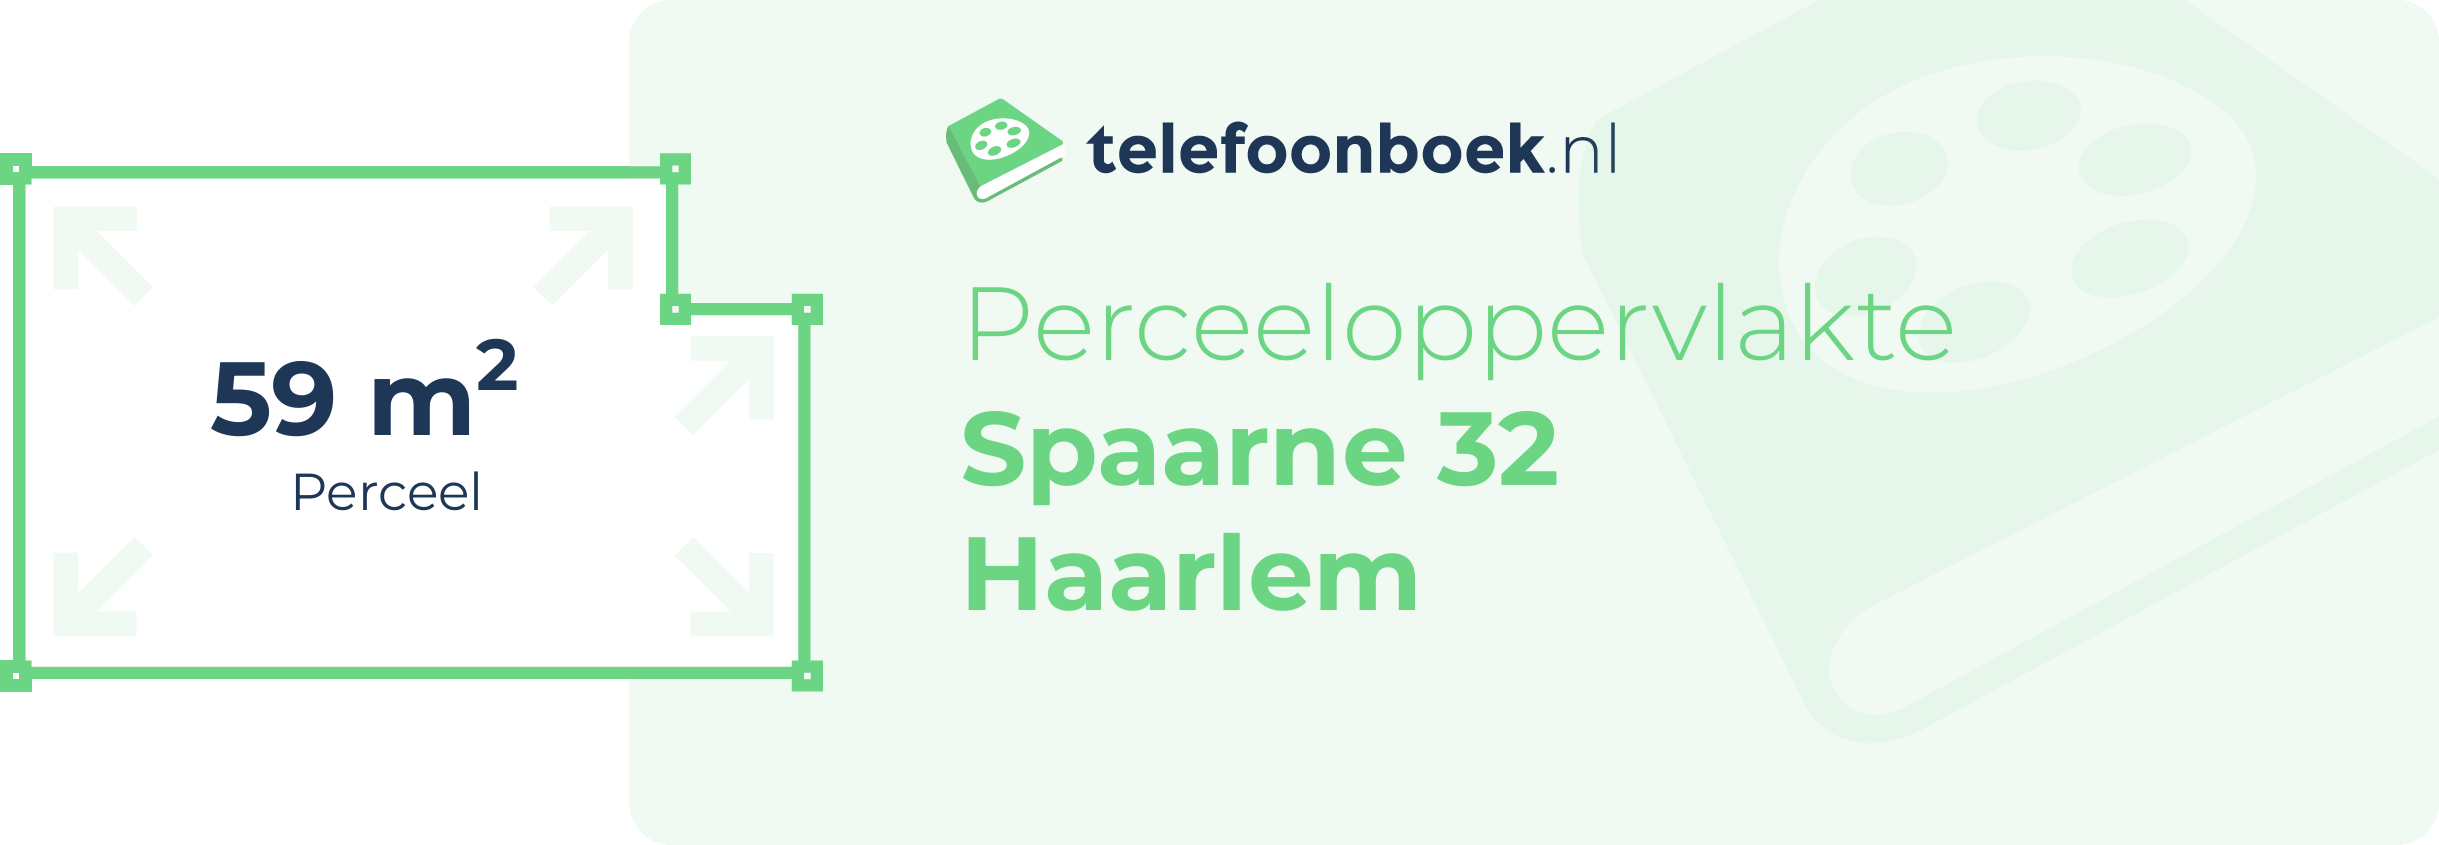 Perceeloppervlakte Spaarne 32 Haarlem